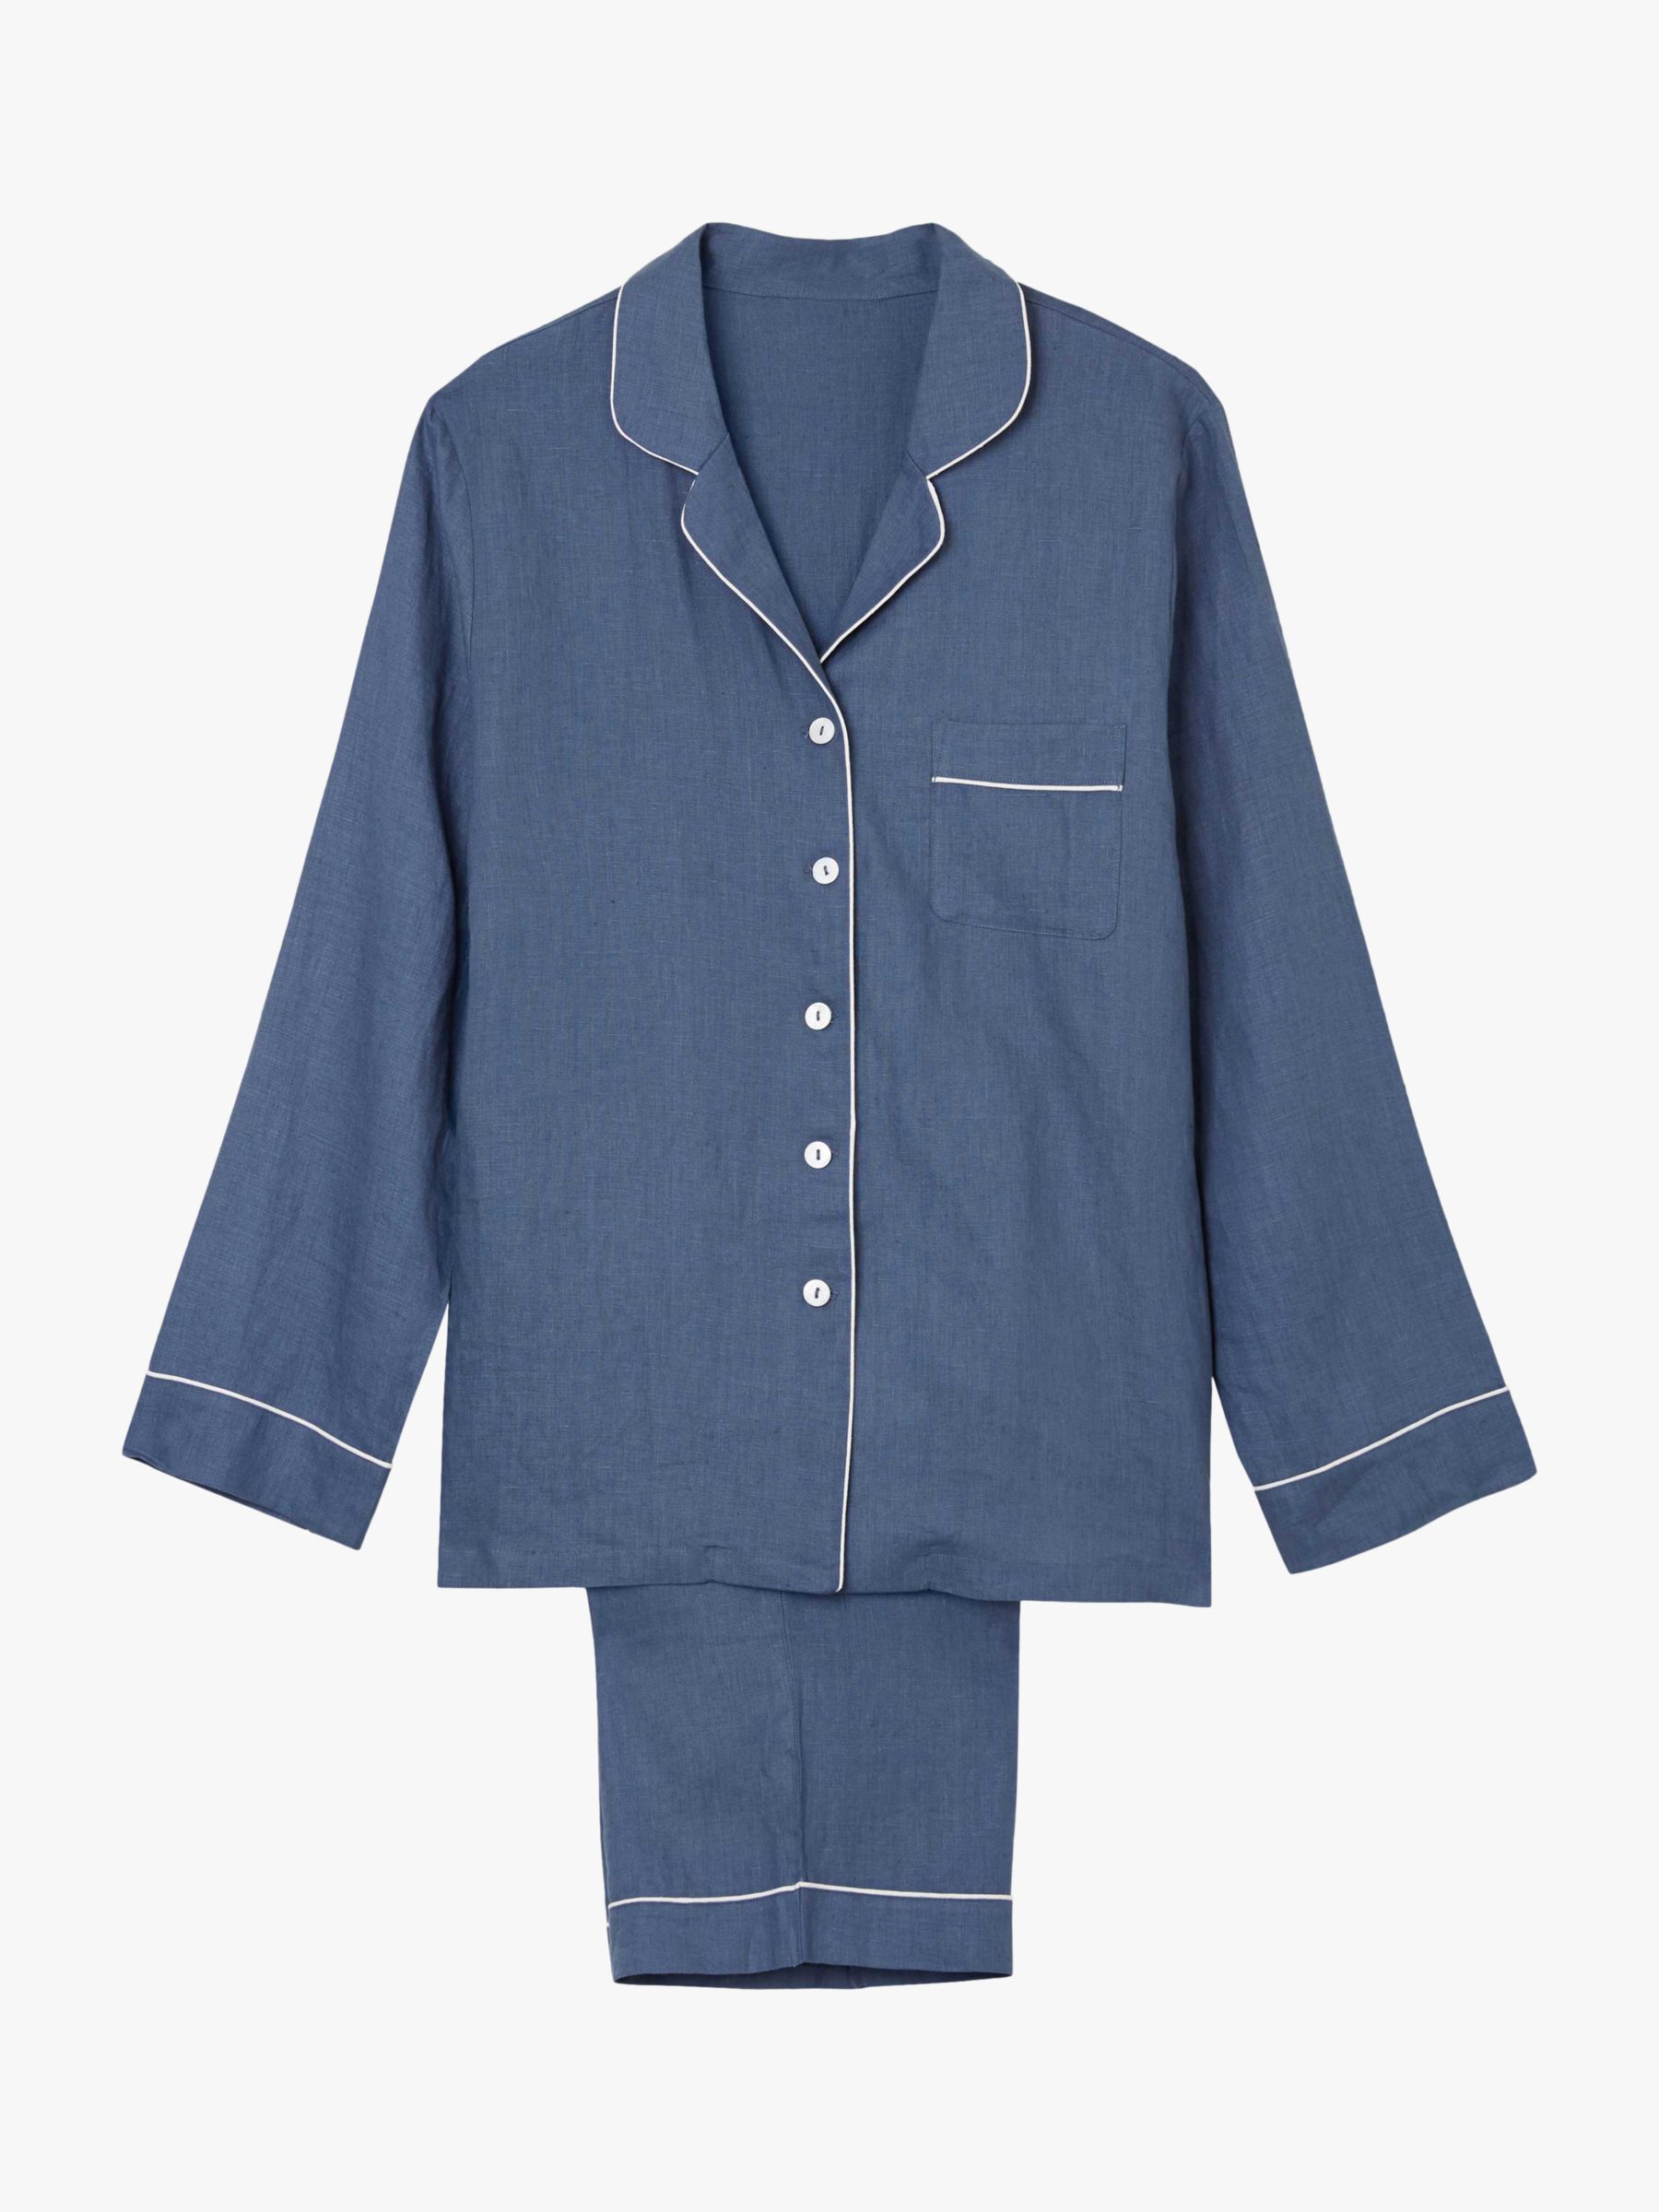 Buy Piglet in Bed Linen Pyjama Set Online at johnlewis.com